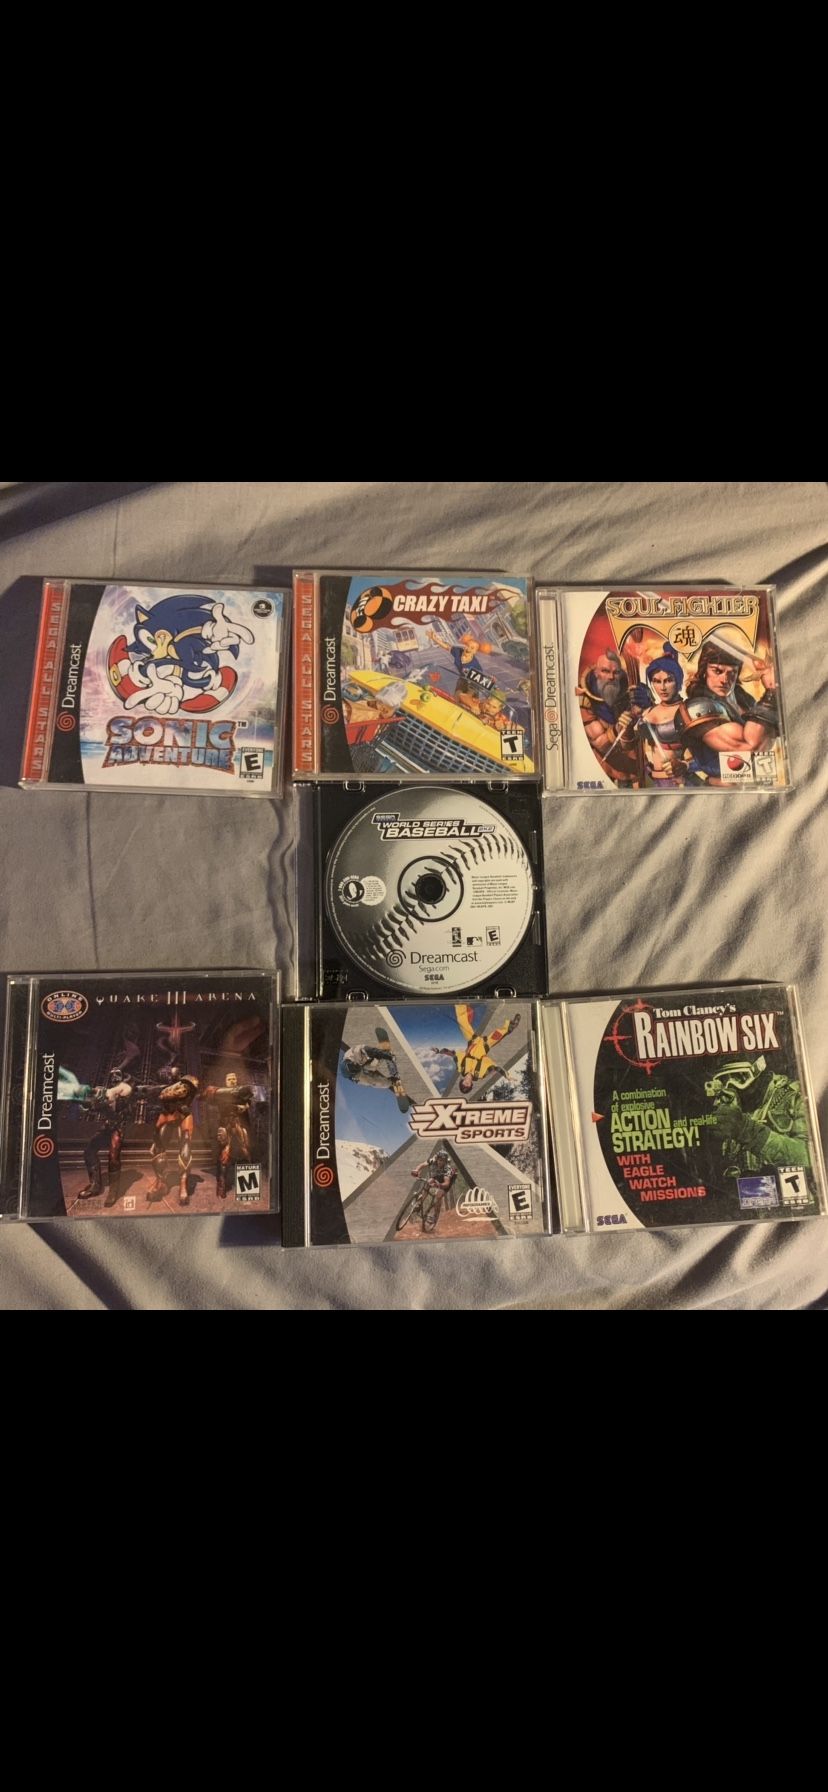 Sega Dreamcast games